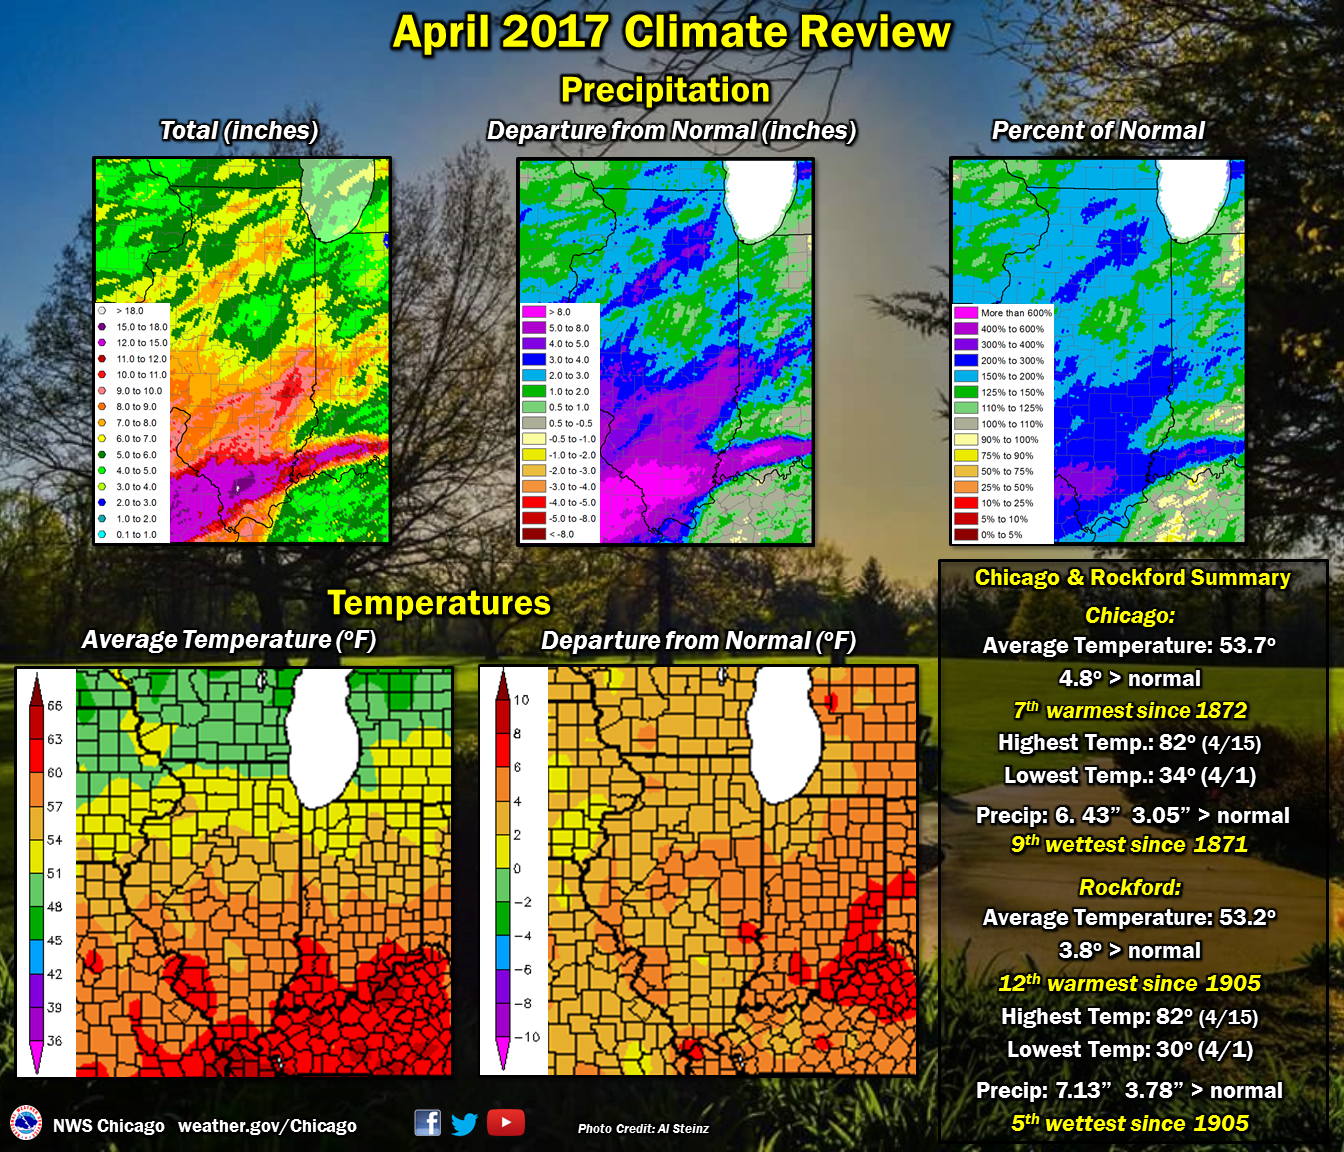 April 2017 Review: Precipitation and Temperatures